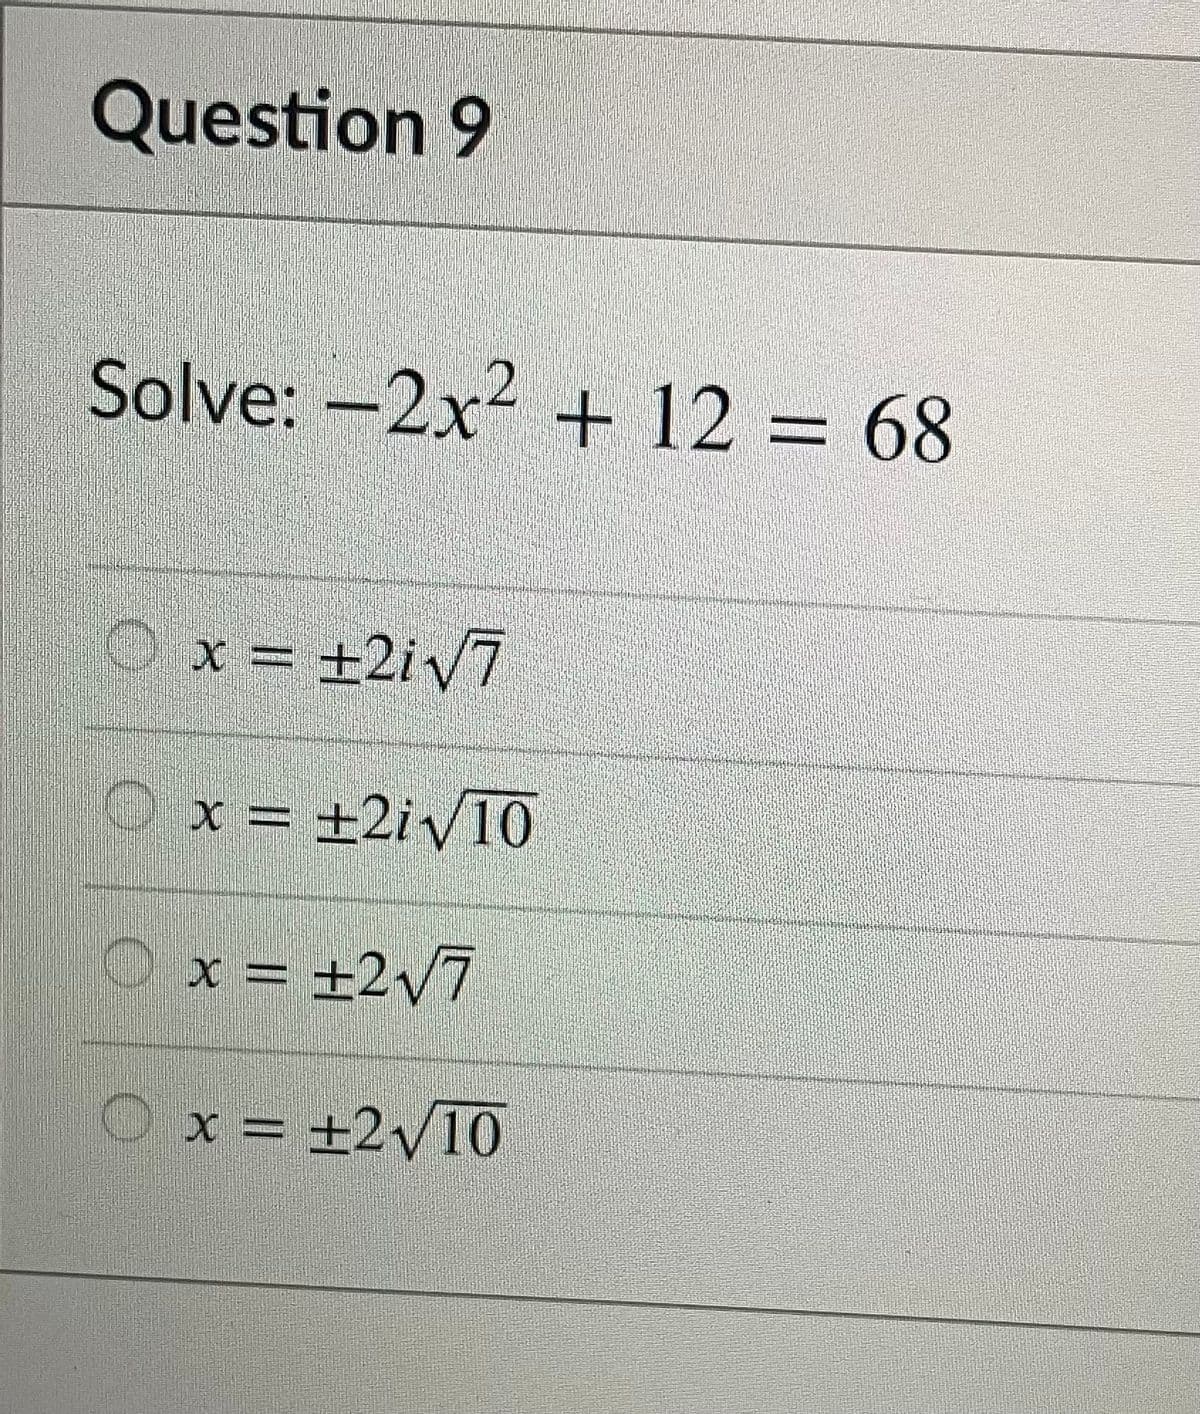 Question 9
Solve: –2x² + 12 = 68
Ox = ±2iV7
O x = ±2iv10
Ox = ±2v7
Ox = ±2y10
